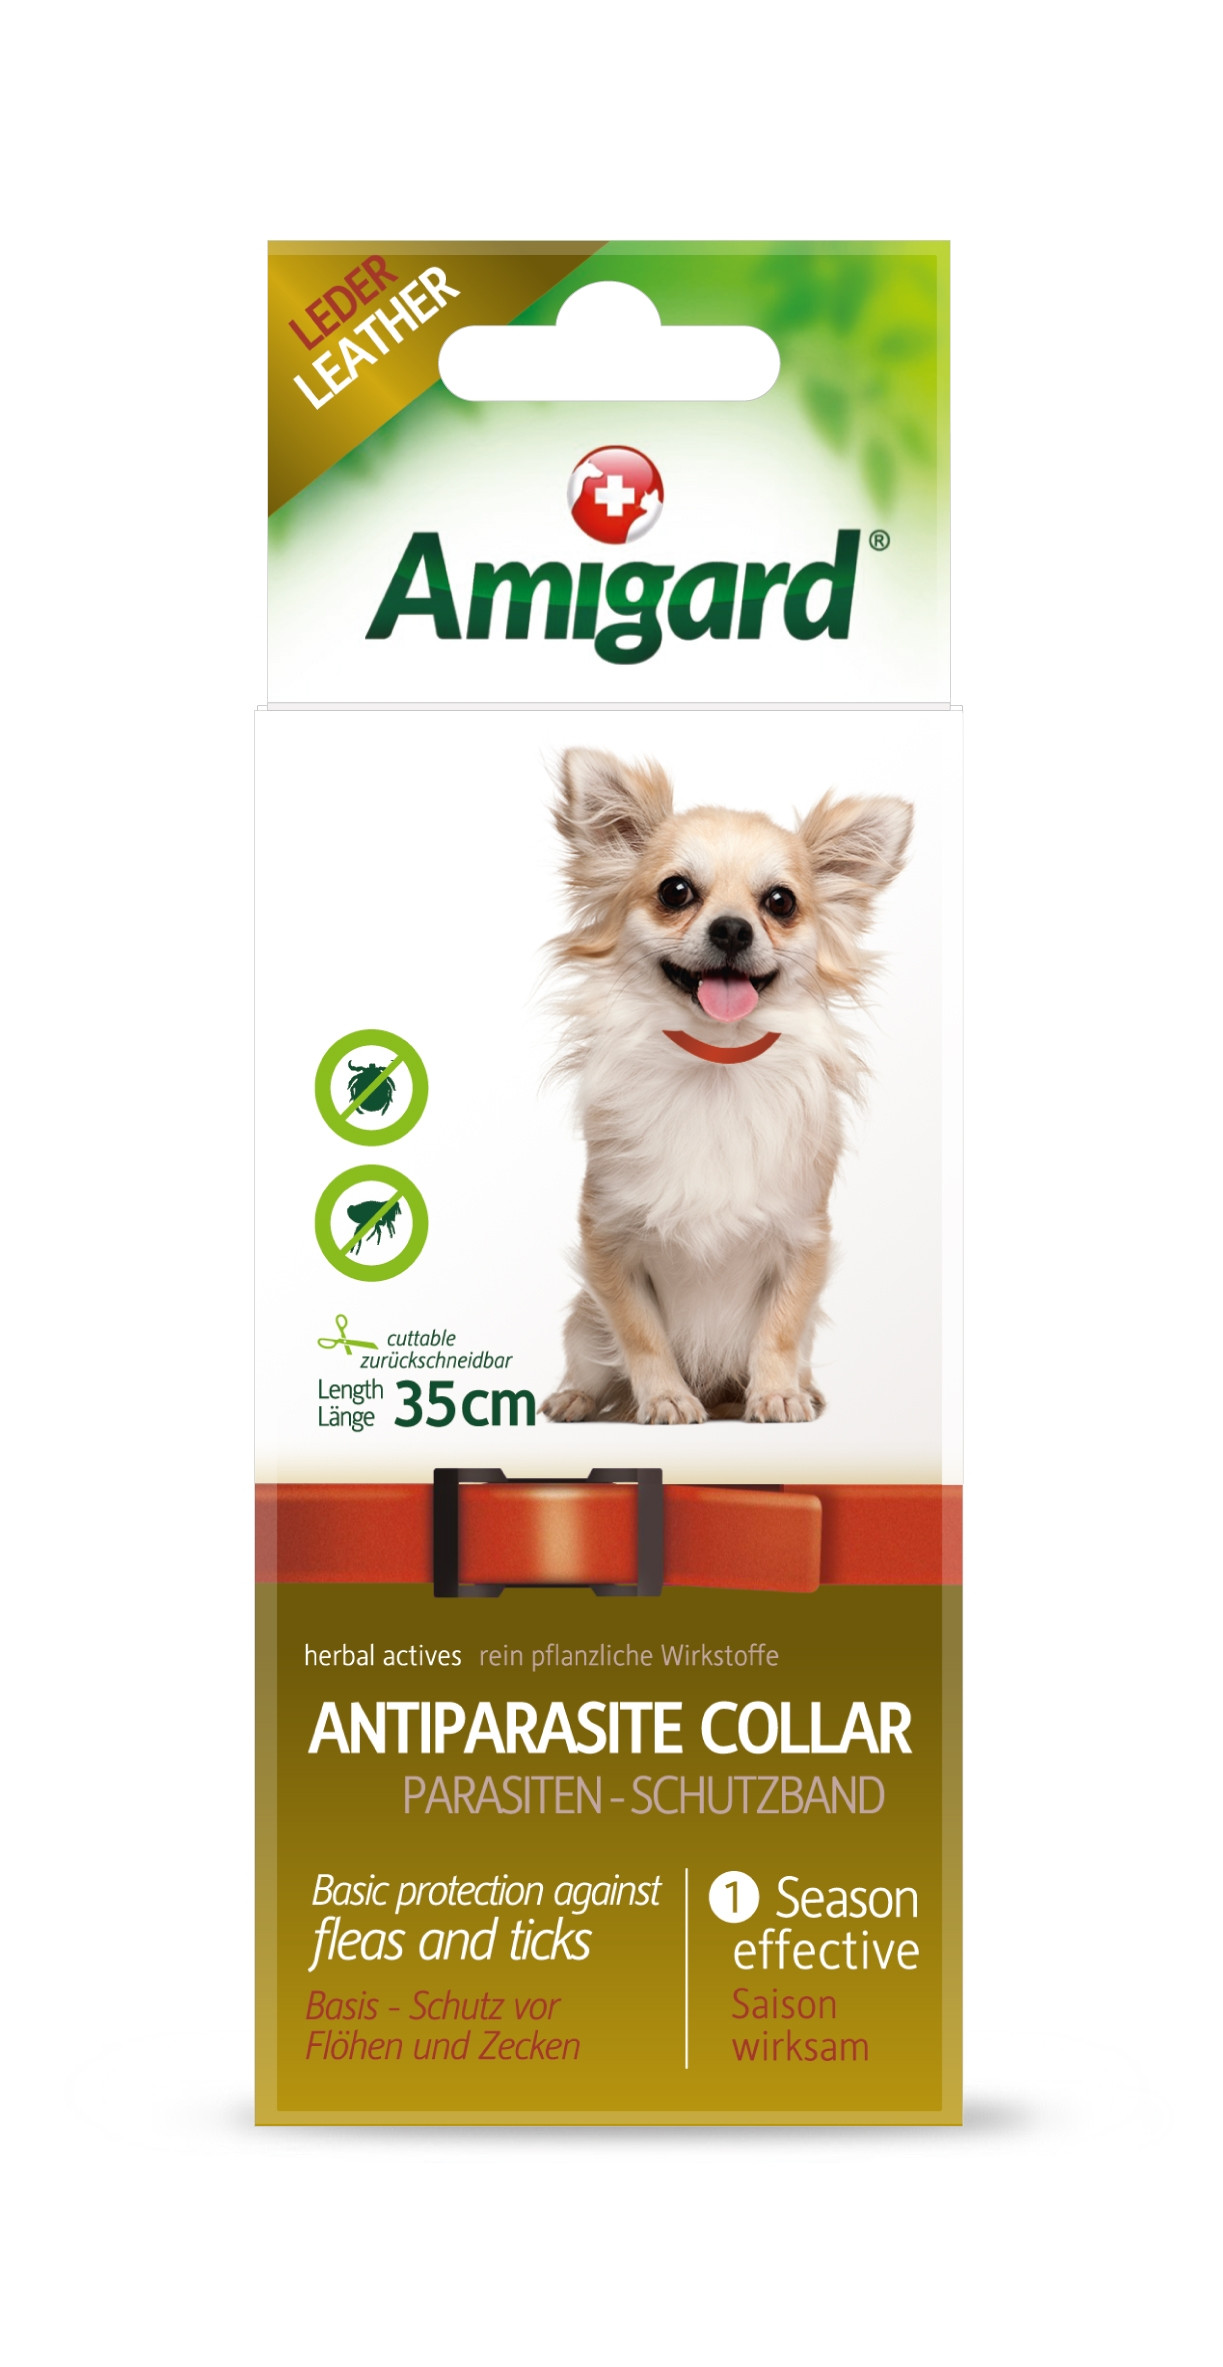 Amigard Parasiten-Schutzband für sehr kleine Hunde, 35cm, Leder, rot